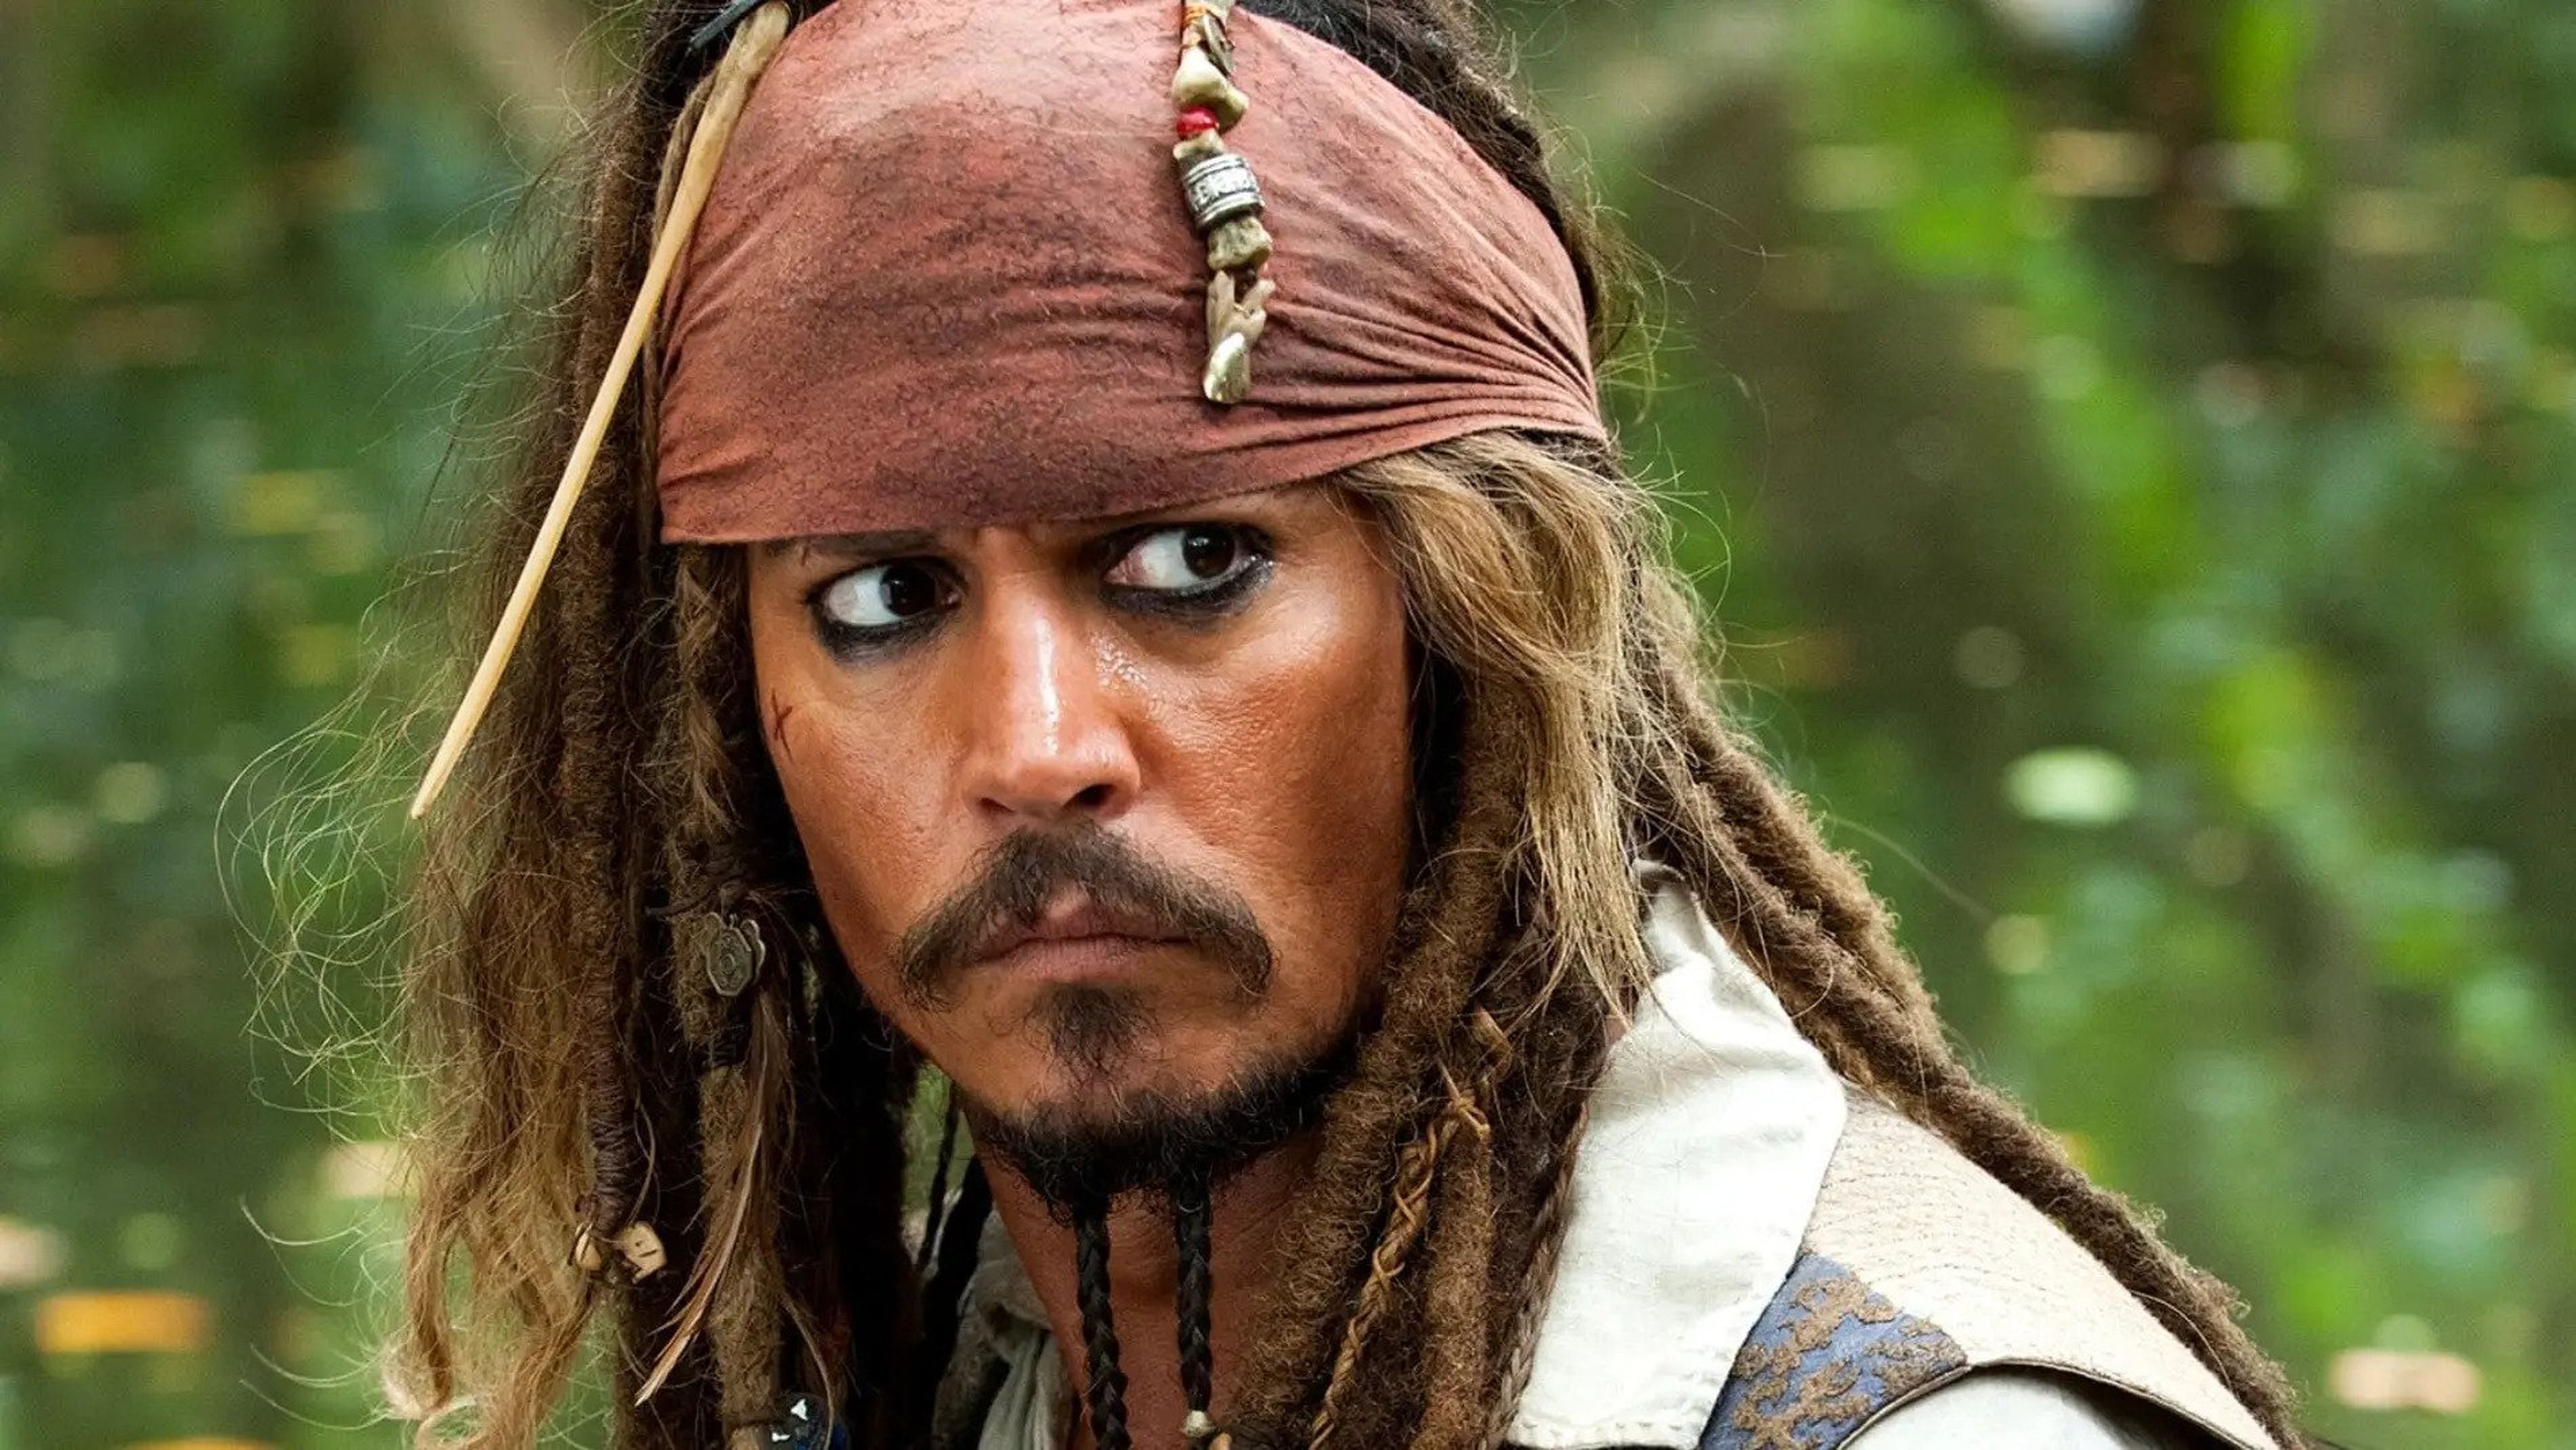 Qué cabe esperar de Piratas del Caribe 6? ¿Volverá Johnny Depp?